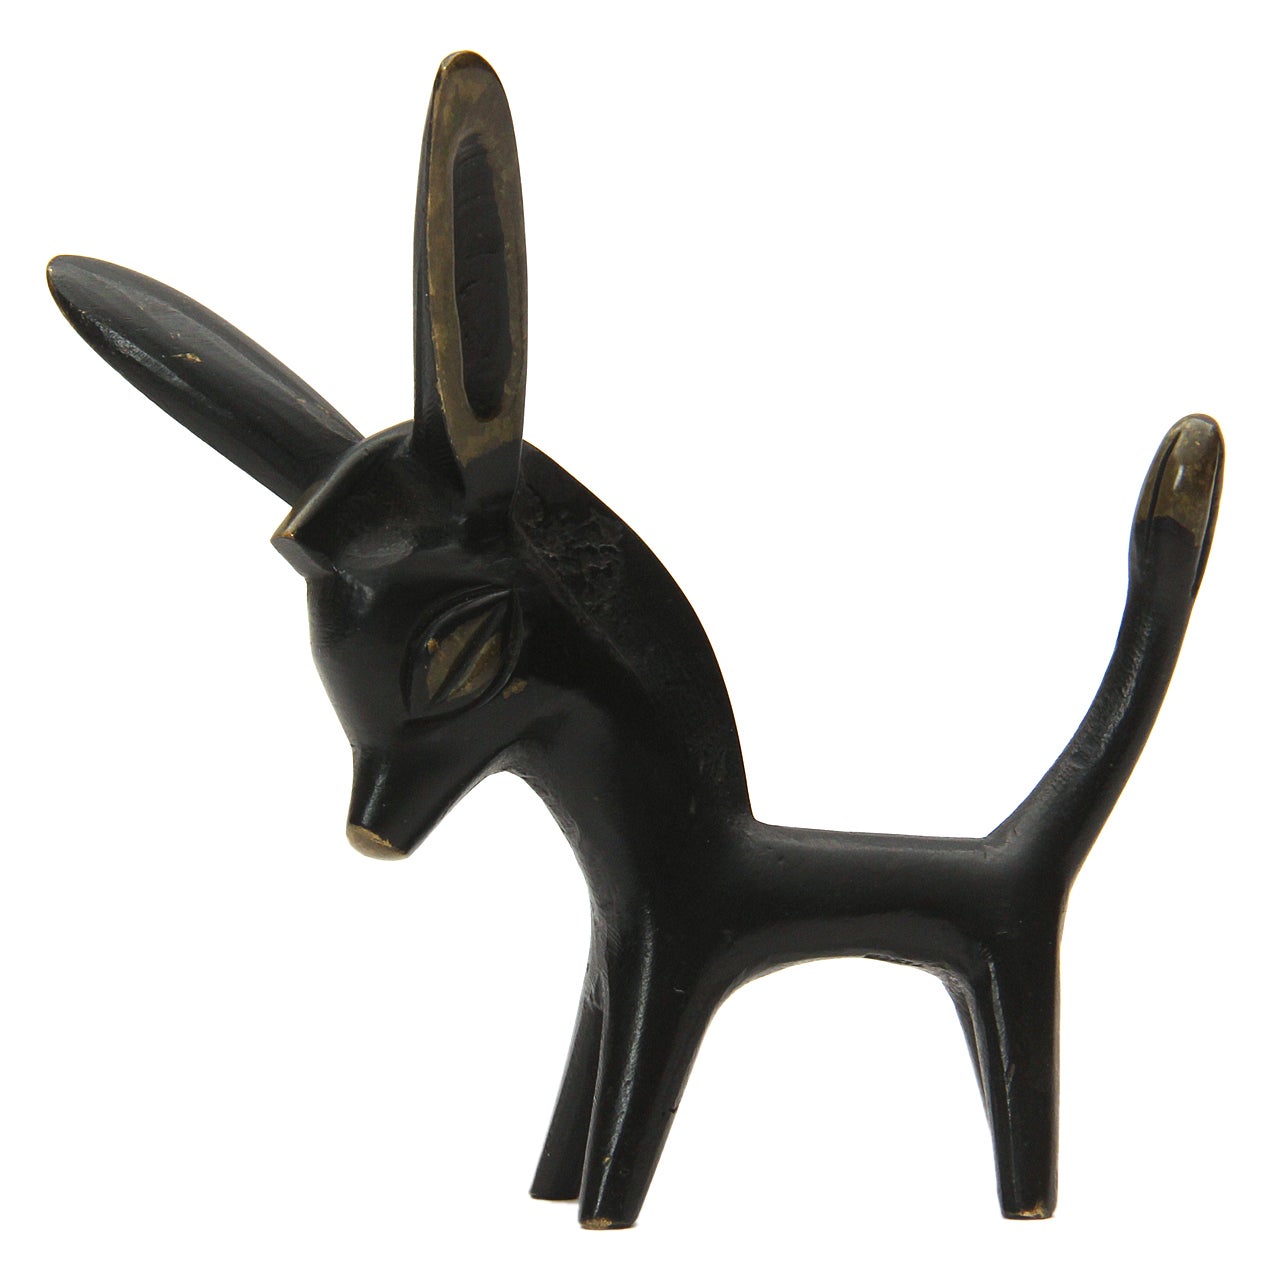 Bronze Donkey by Walter Bosse